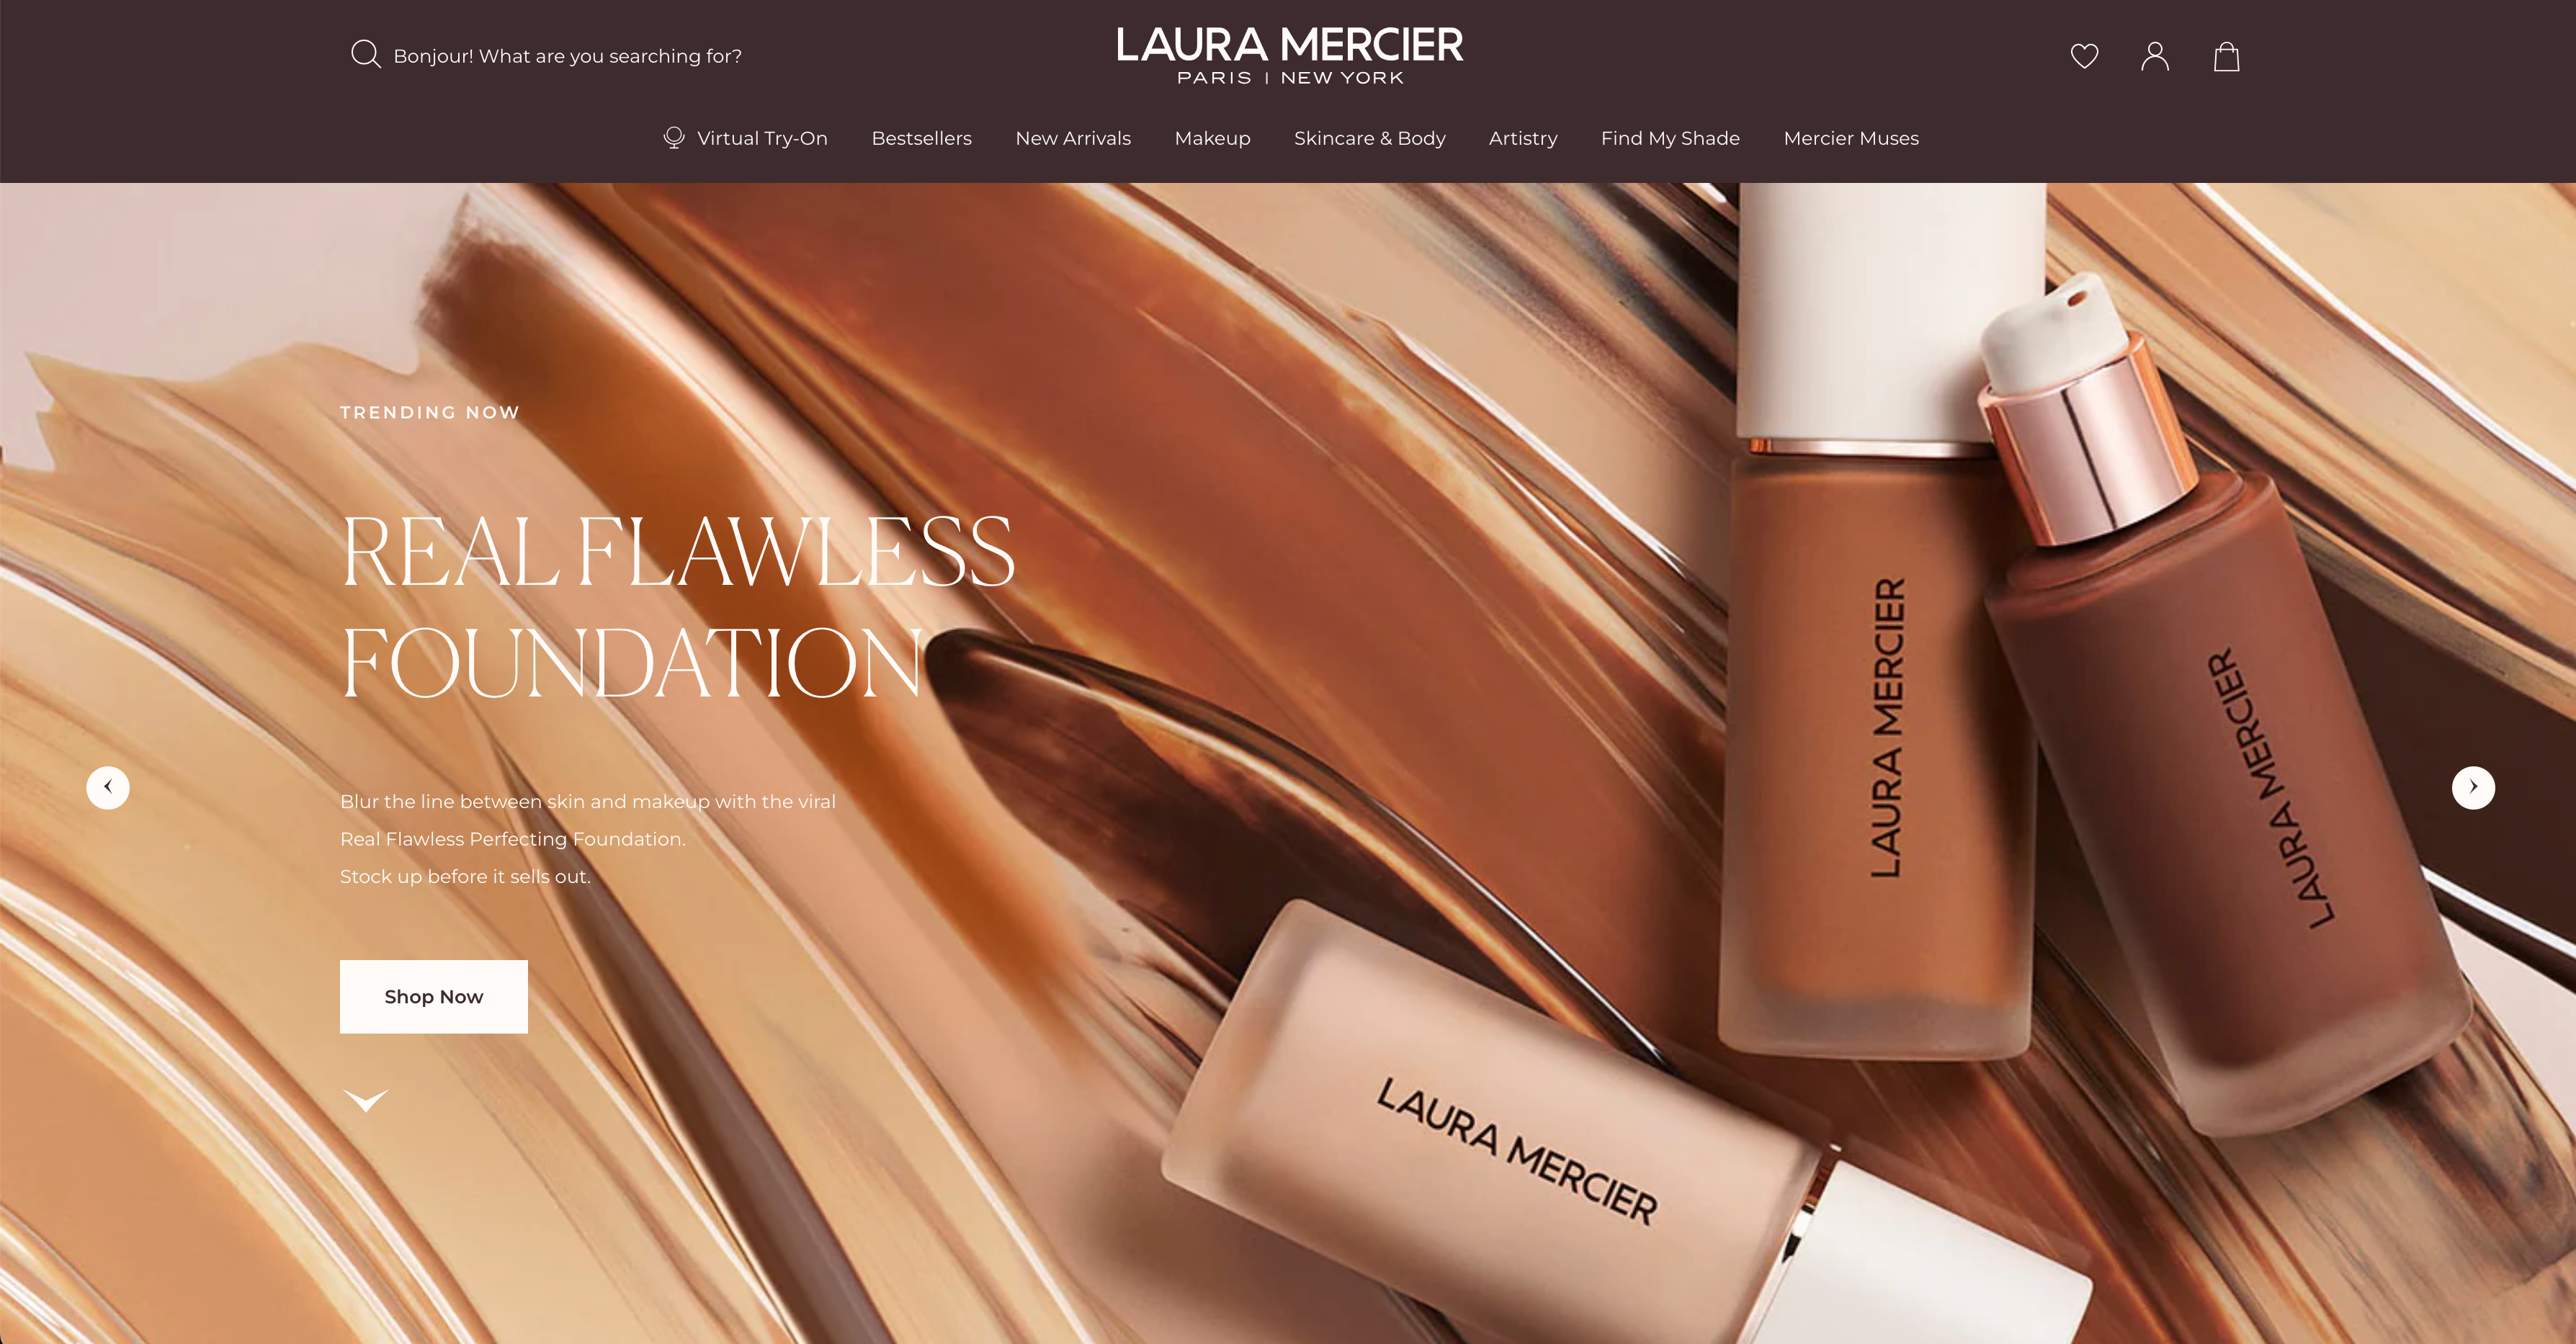 Laura Mercier home page.